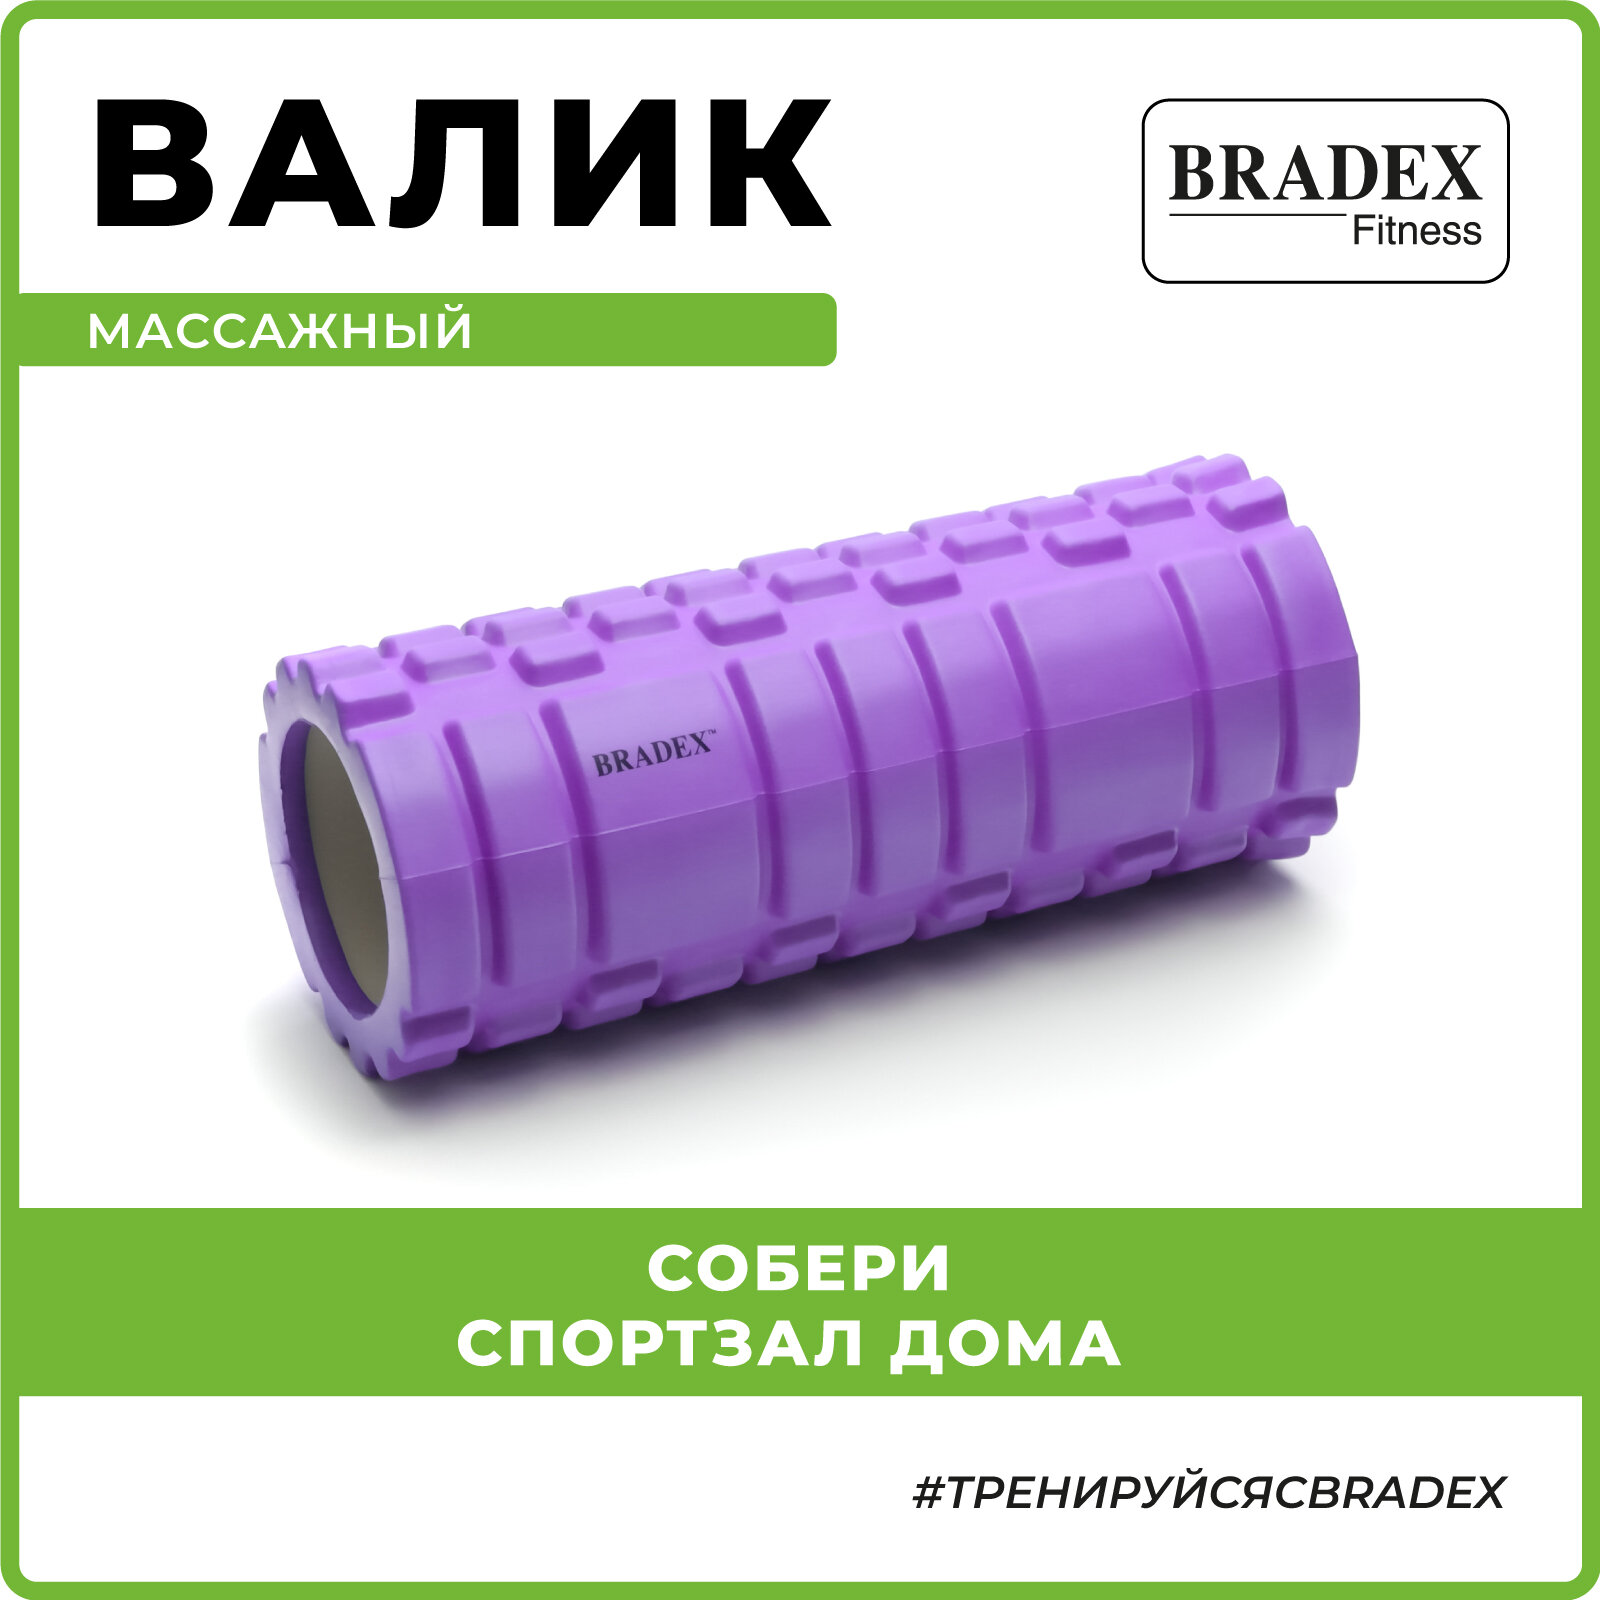 Ролик массажный BRADEX, спортивный валик для фитнеса, средняя жесткость, фиолетовый